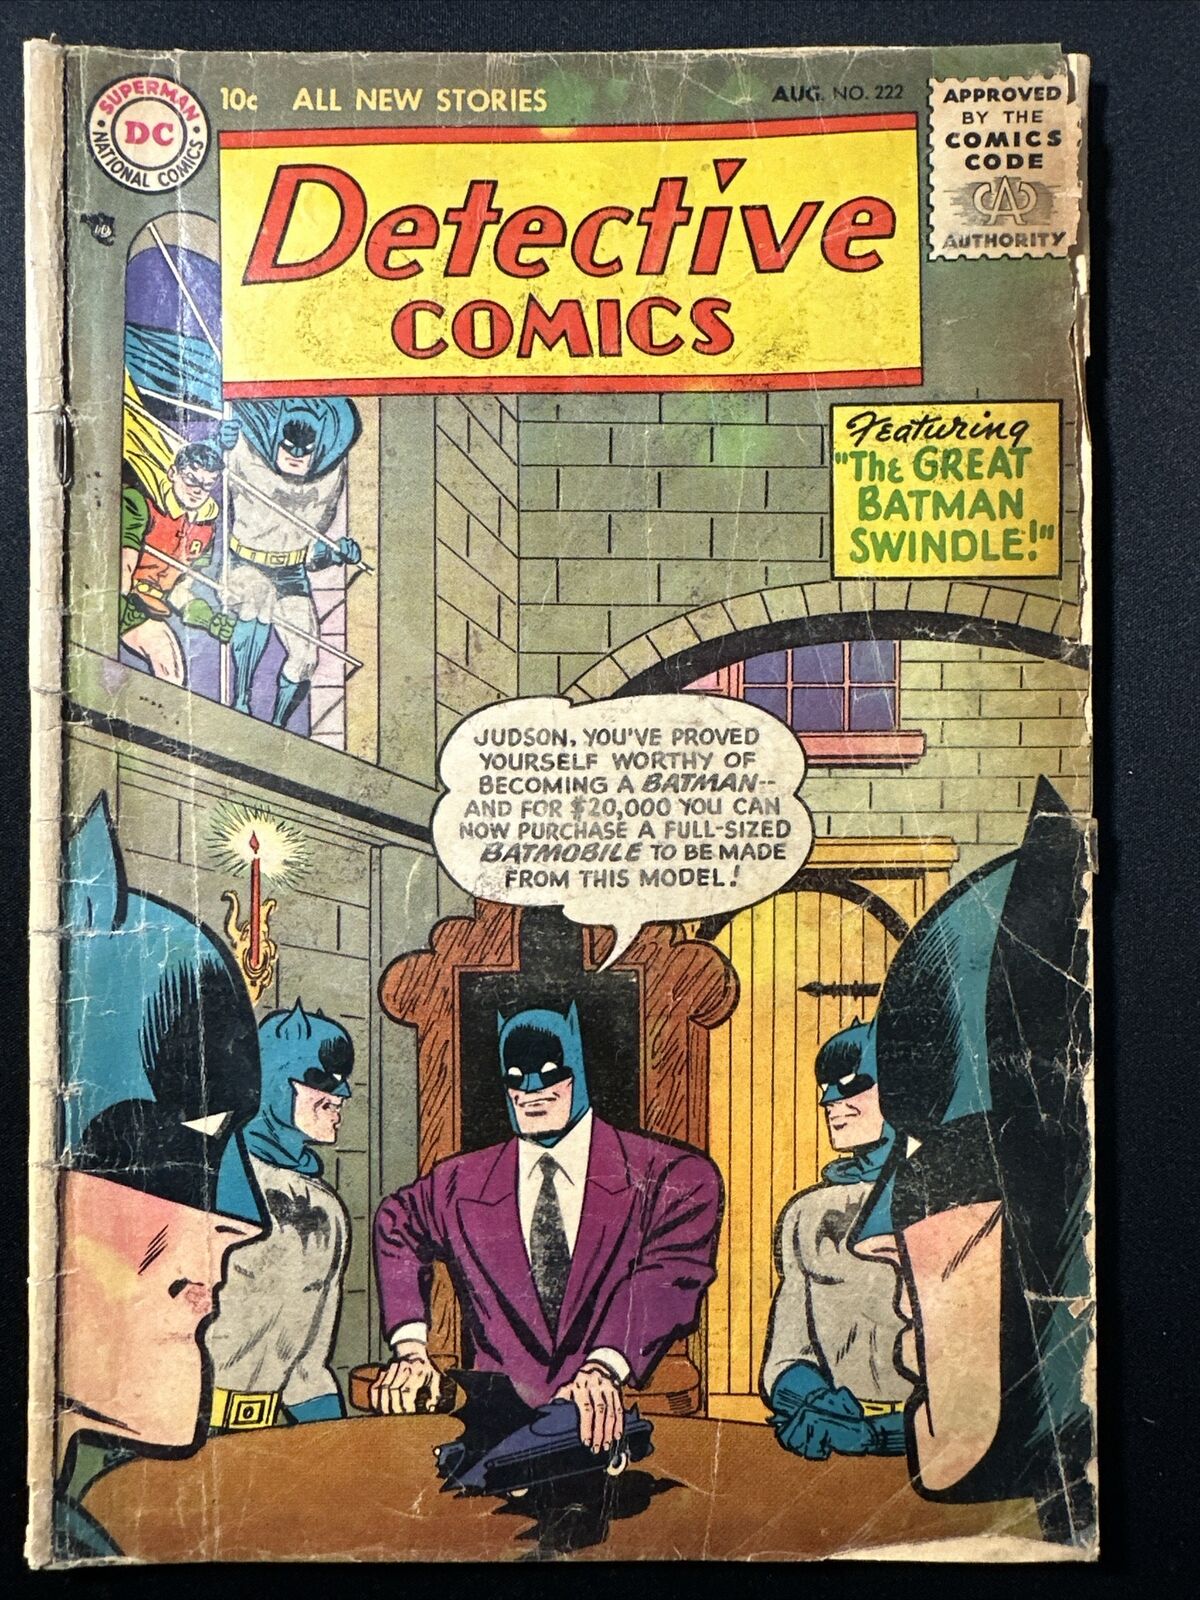 Batman Detective Comics #222 Golden Age Comic 1955 DC Comics 1st Print Fair *A4